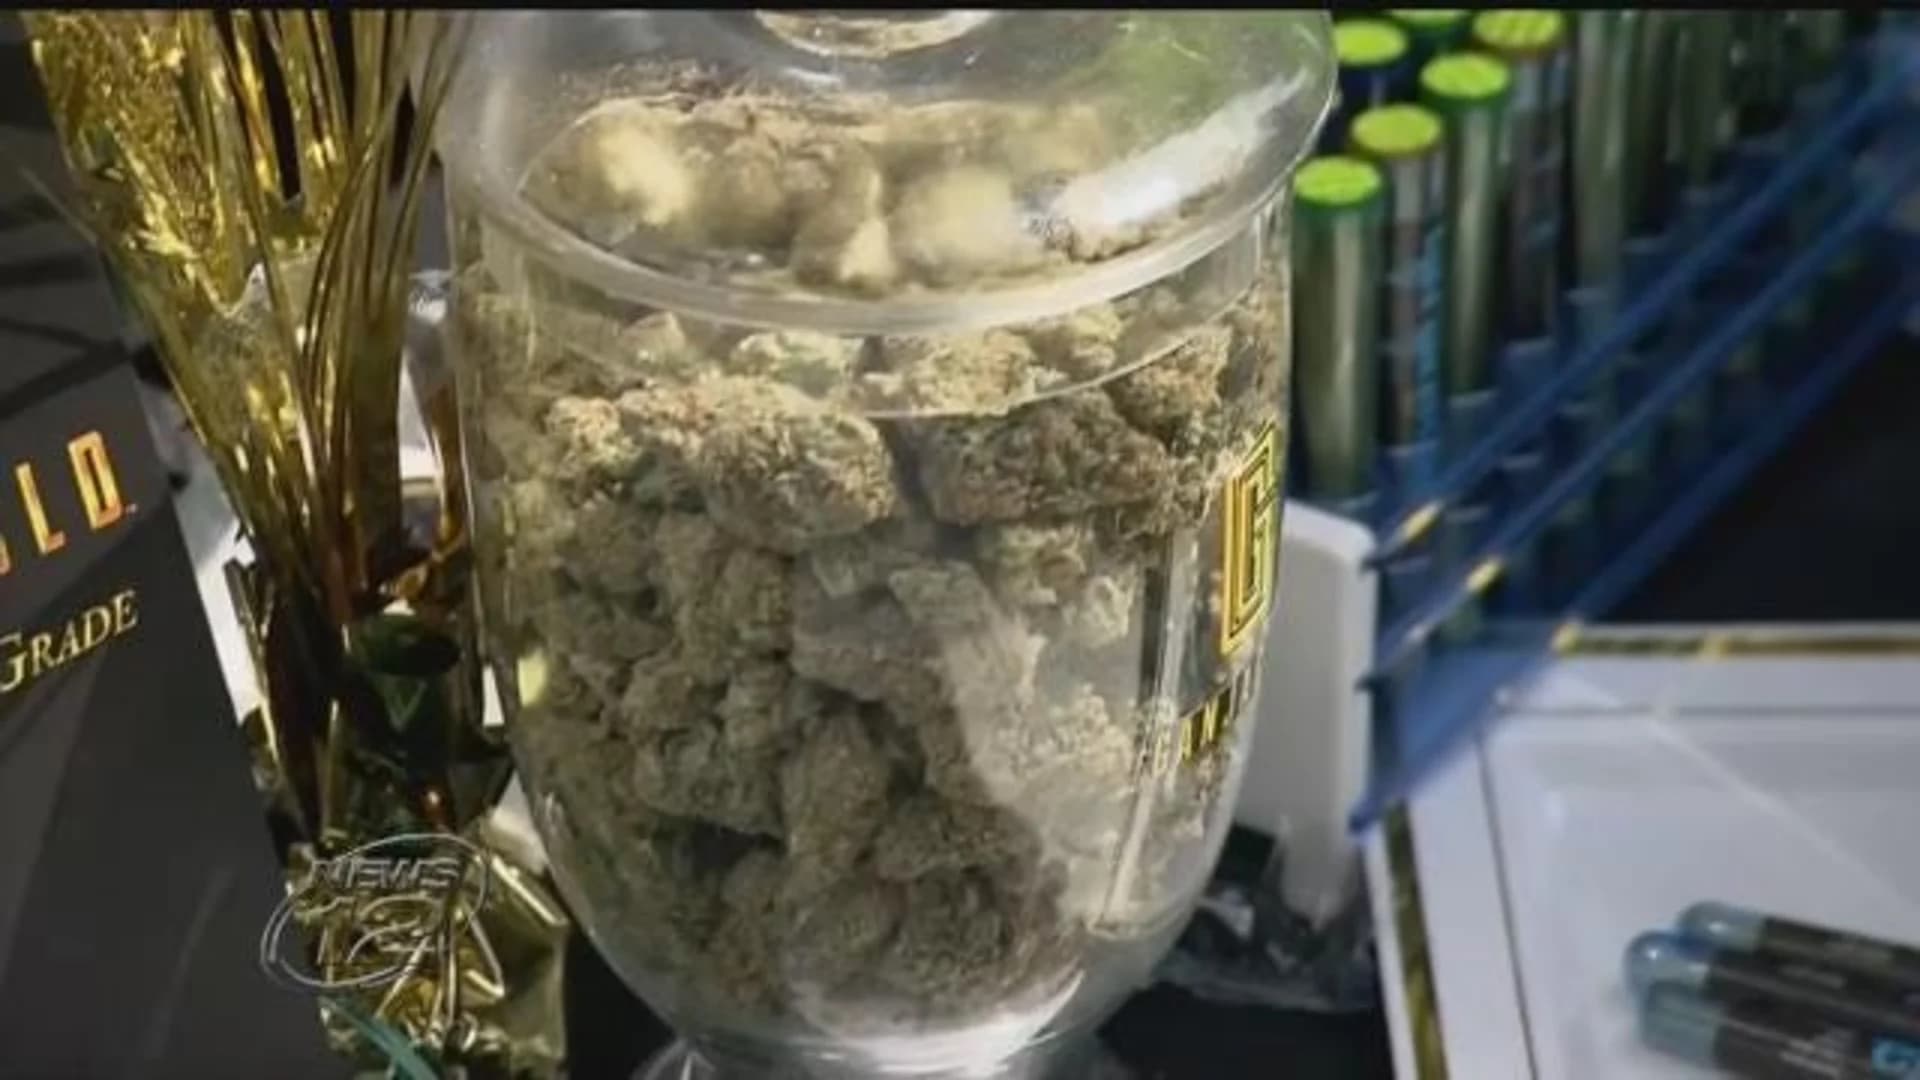 Brick becomes latest municipality to ban sale of recreational marijuana